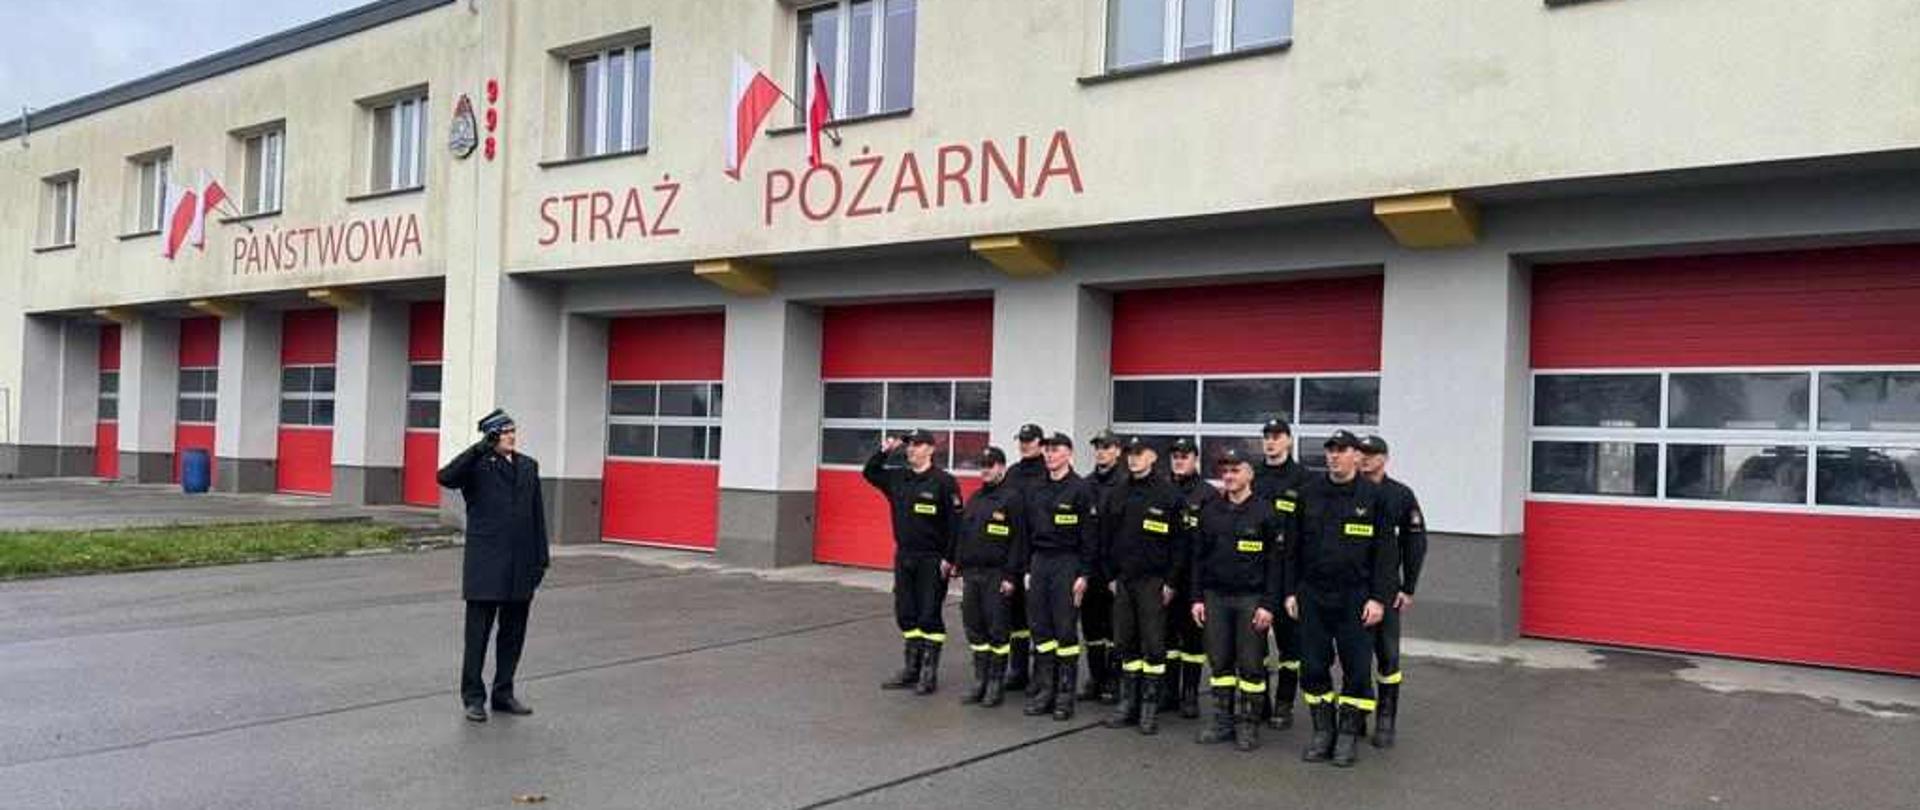 Jaworzniccy strażacy przed budynkiem Komendy Miejskiej Państwowej Straży Pożarnej oddający honor z okazji Narodowego Święta Niepodległości.